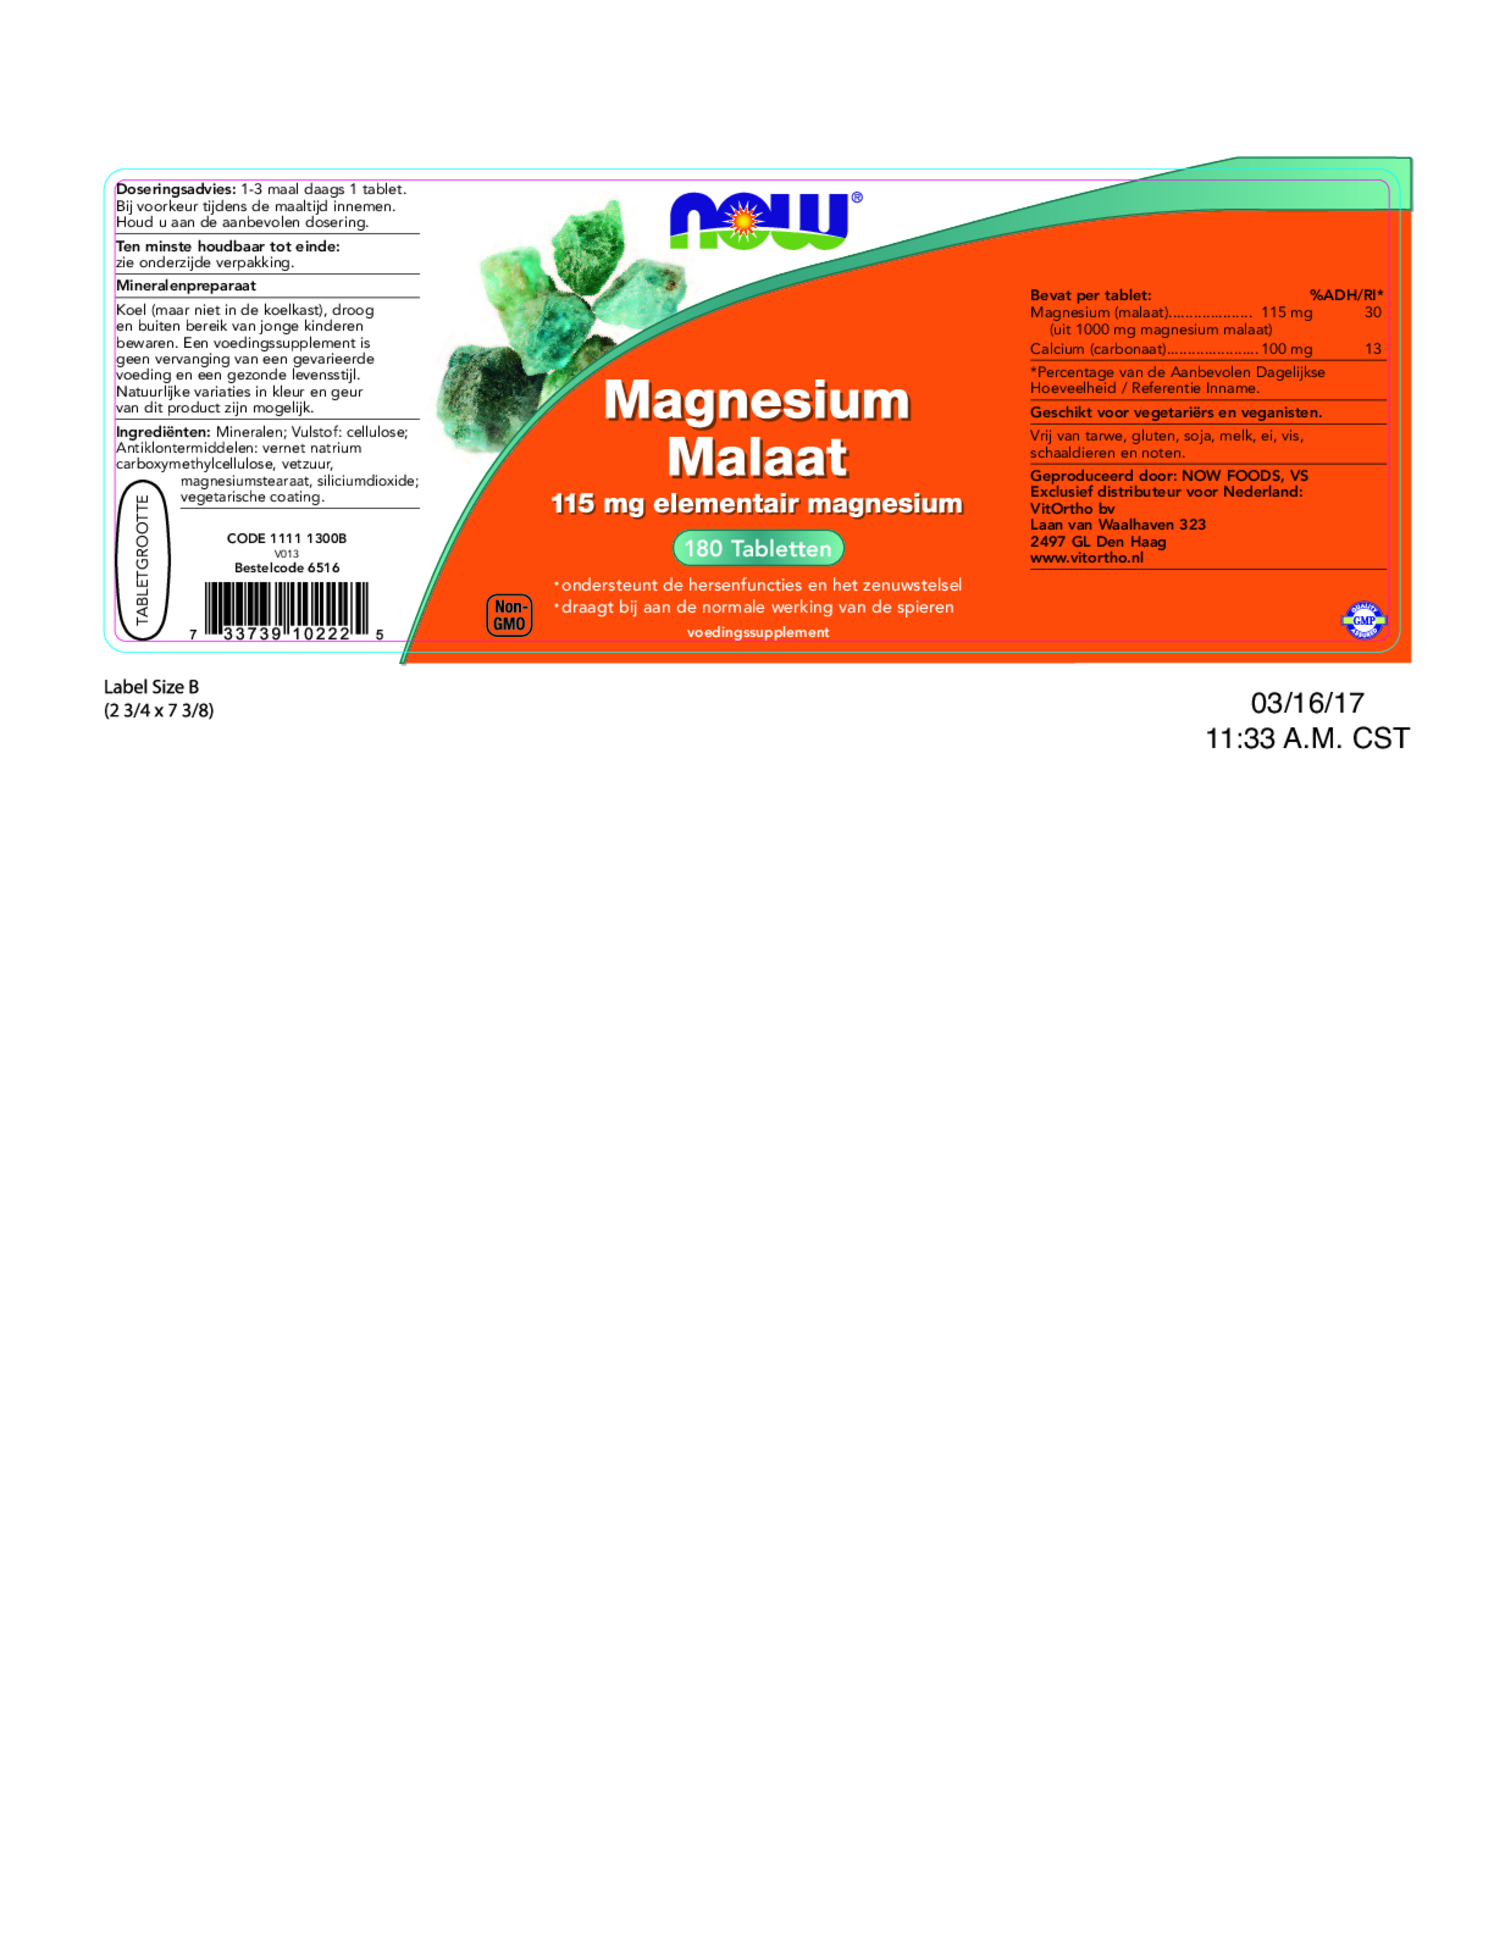 Magnesium Malaat Tabletten afbeelding van document #1, etiket